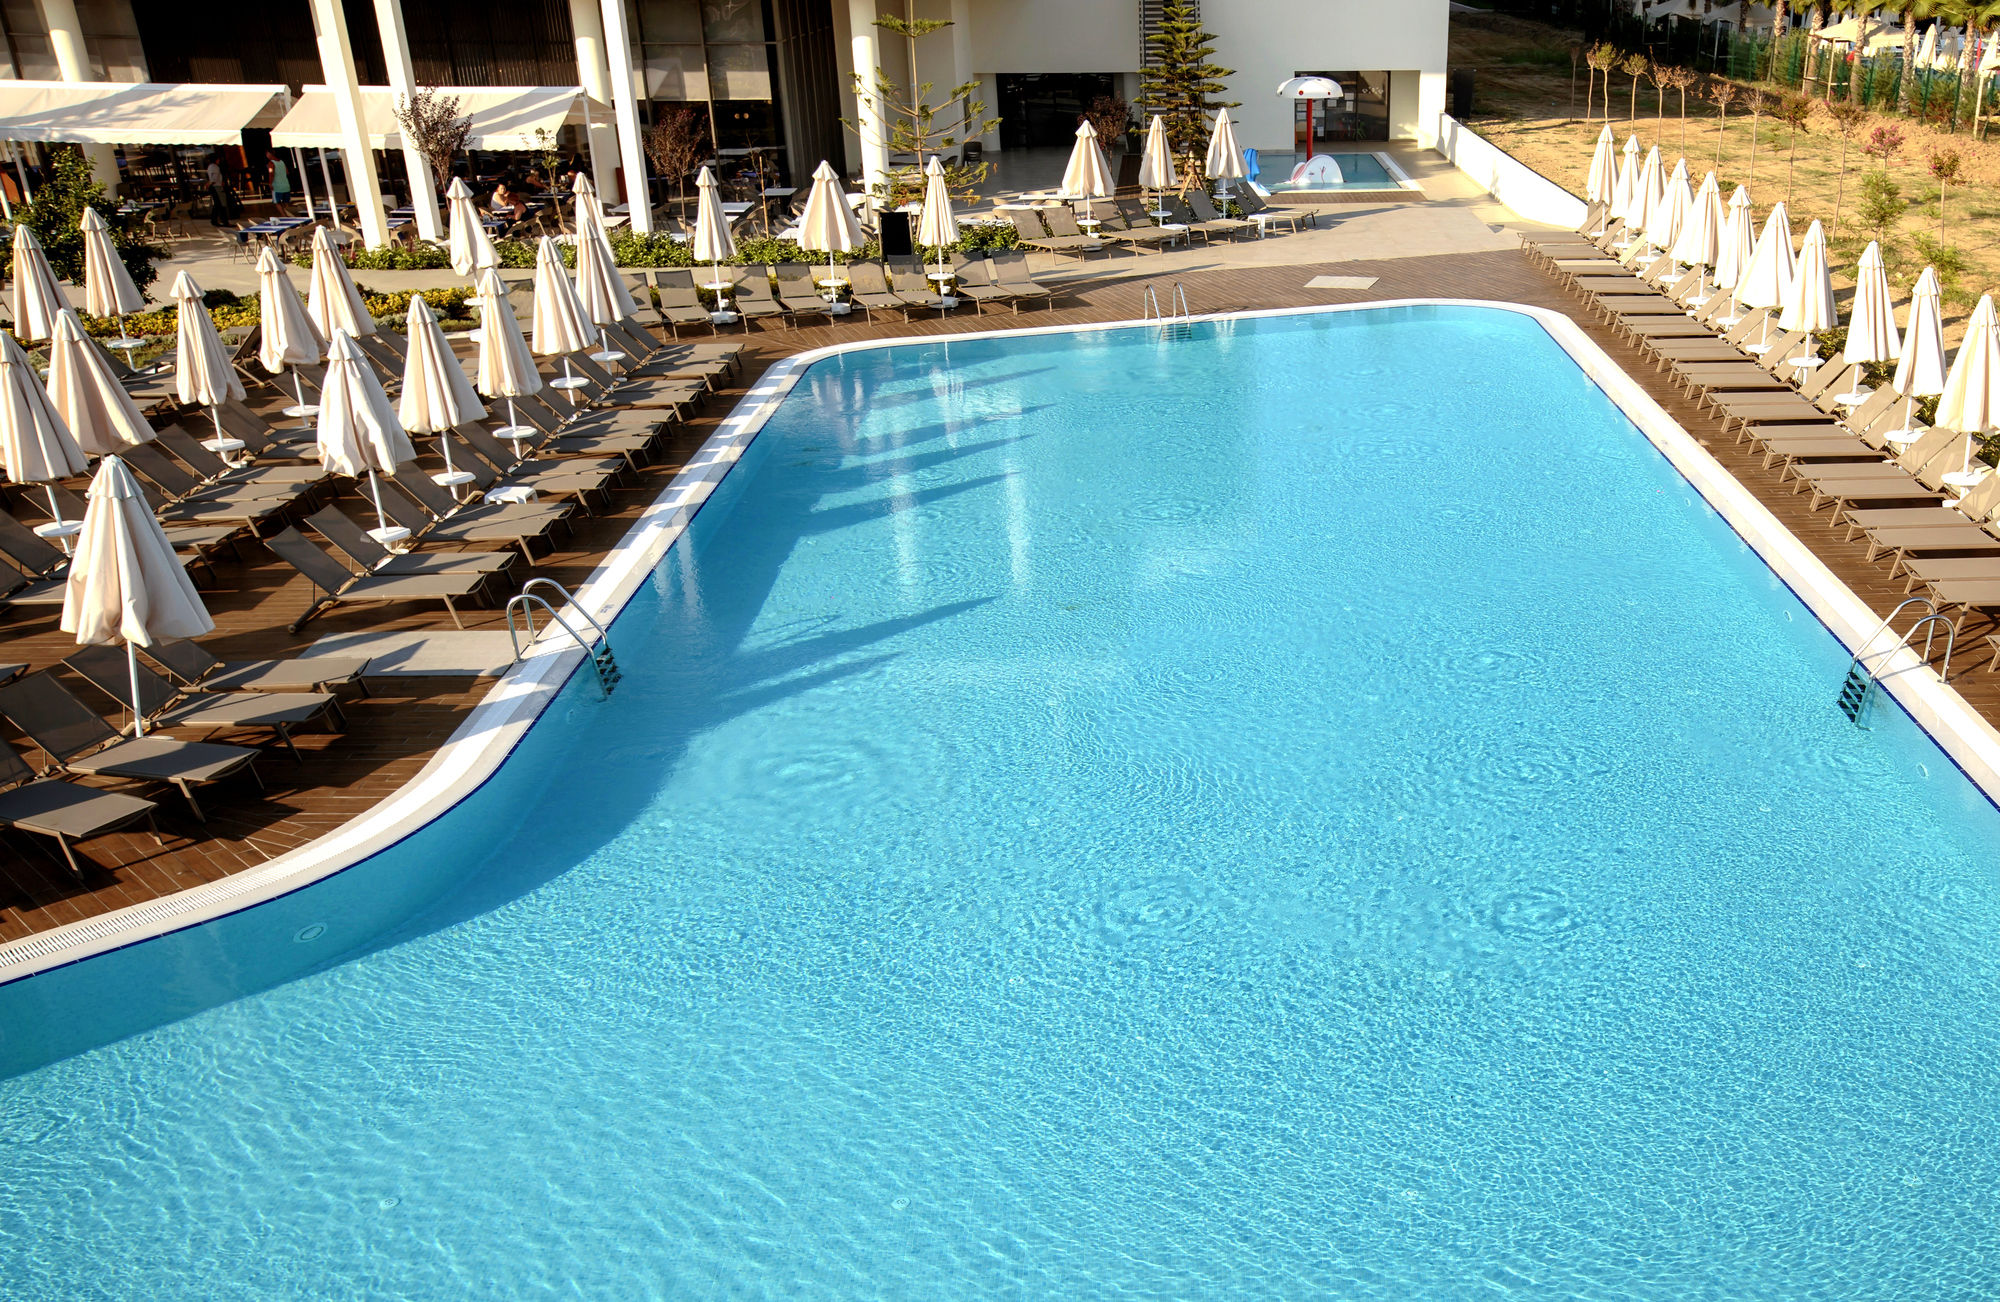 Riolavitas Resort & Spa - All Inclusive